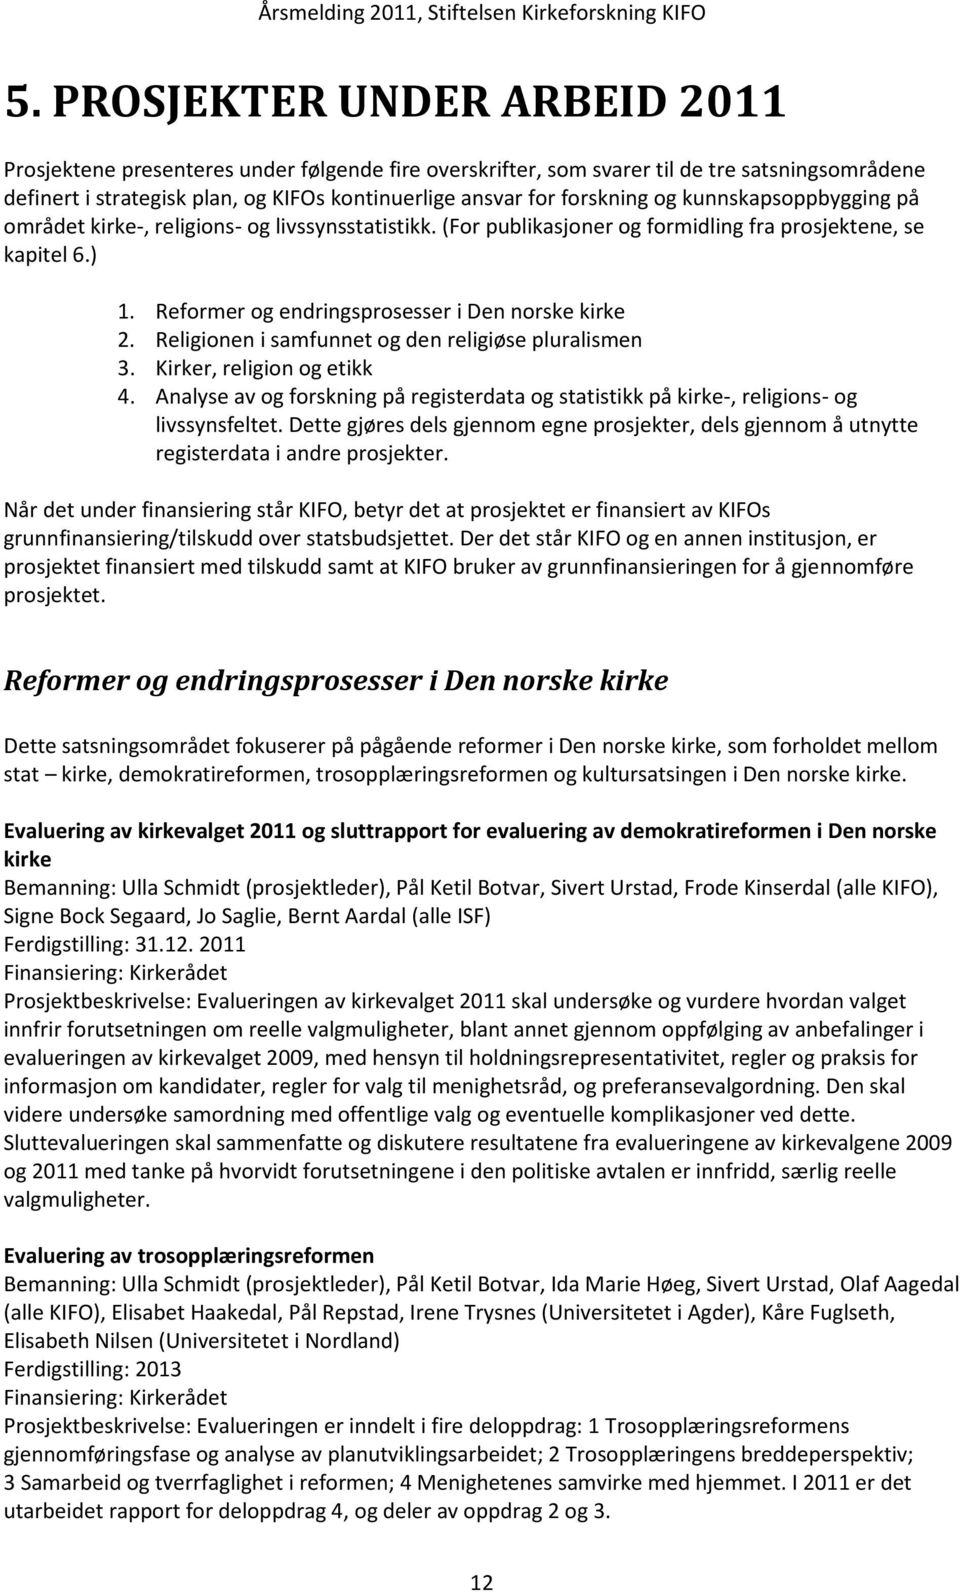 Reformer og endringsprosesser i Den norske kirke 2. Religionen i samfunnet og den religiøse pluralismen 3. Kirker, religion og etikk 4.